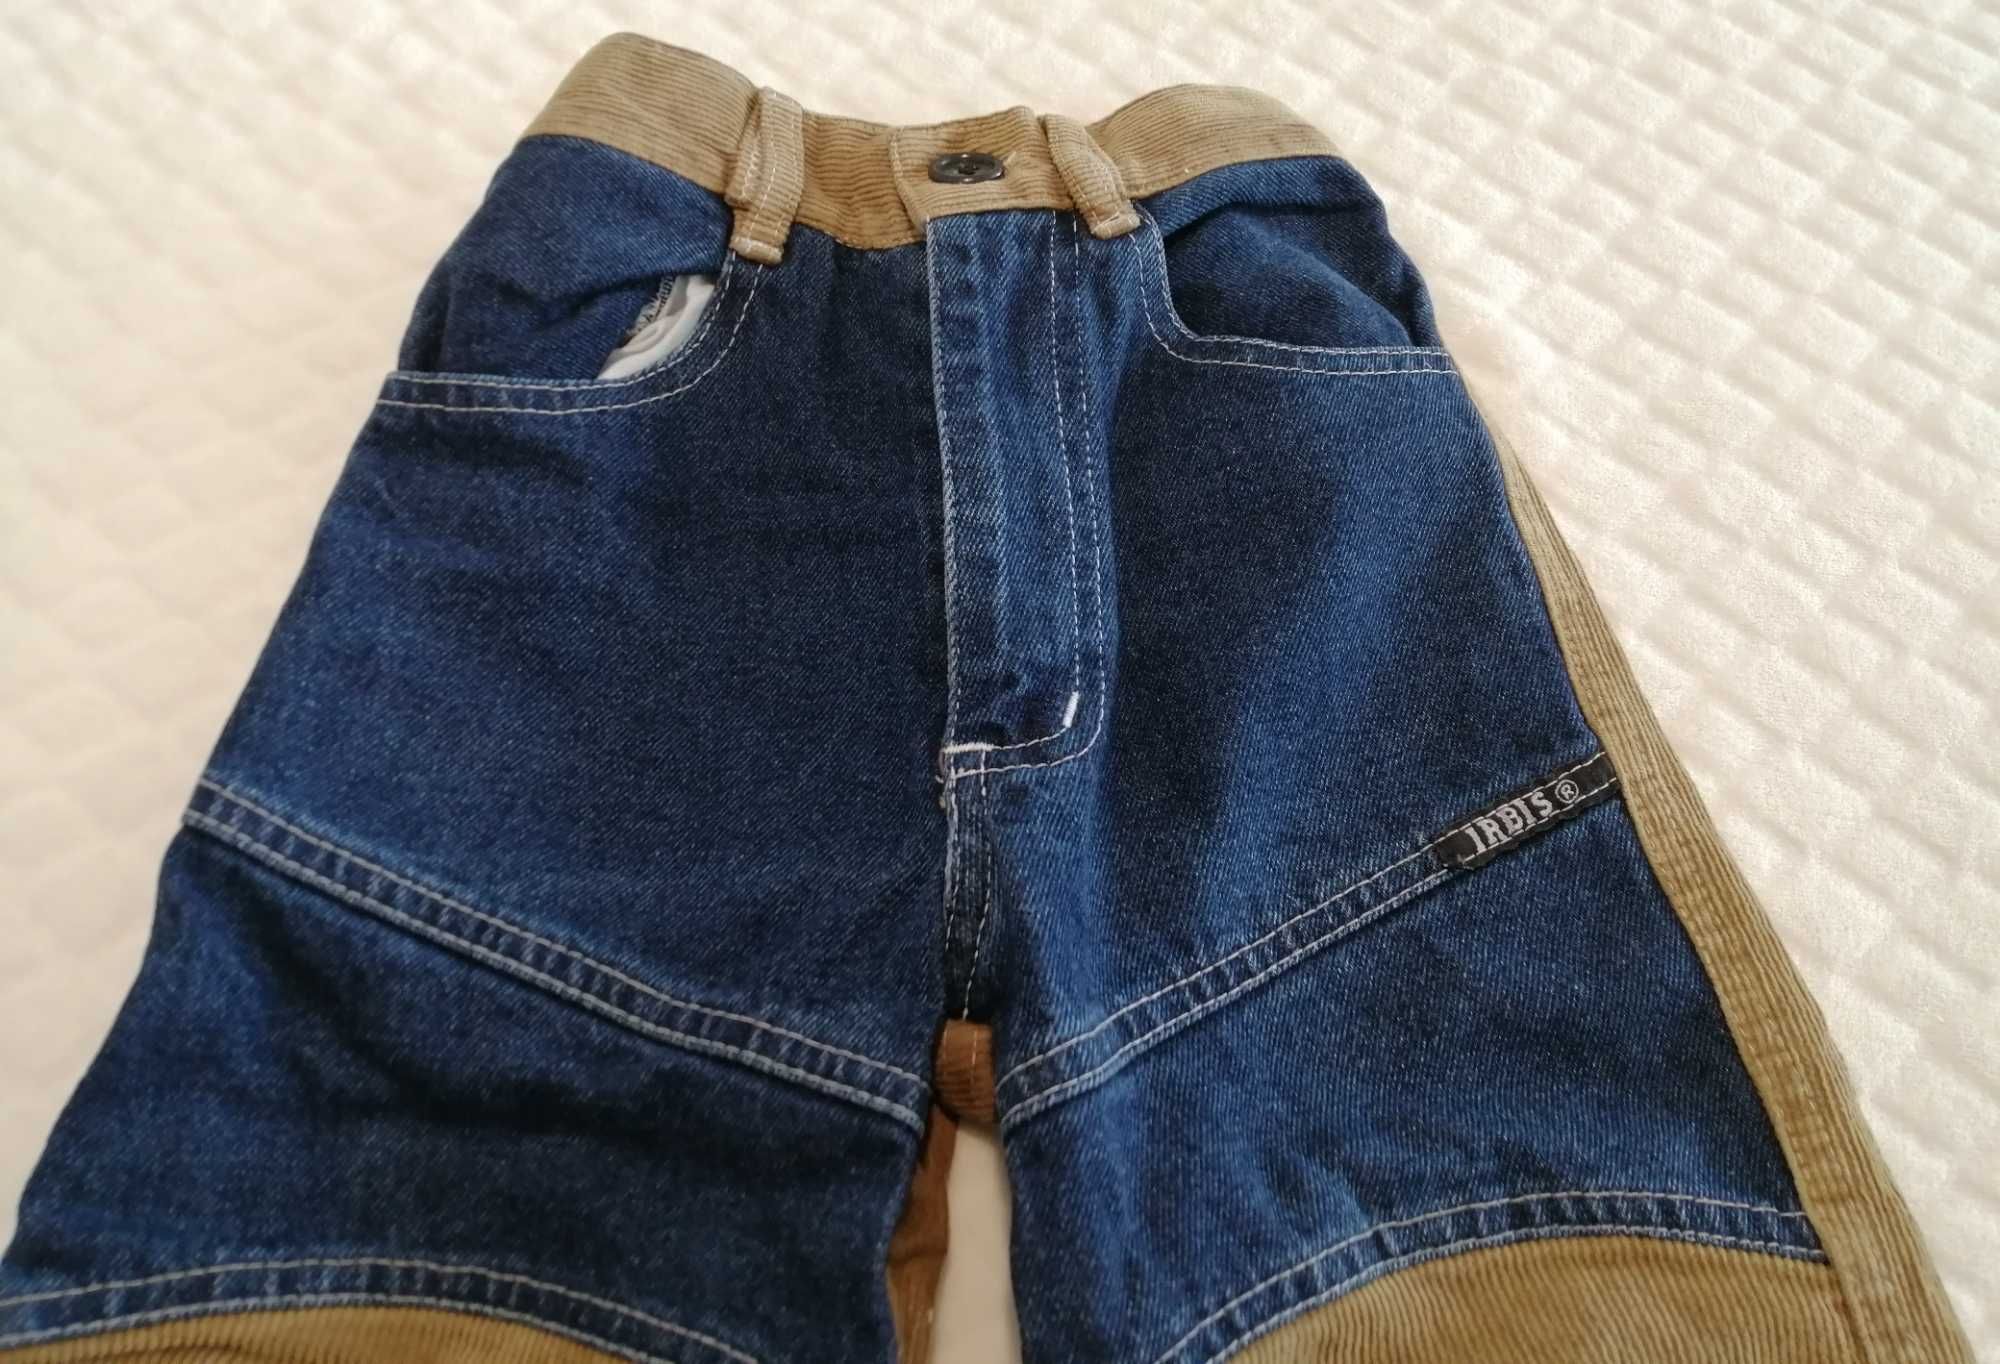 Spodnie sztruksowe, dżinsowe, chłopięce, 110, Irbis (Odzież)